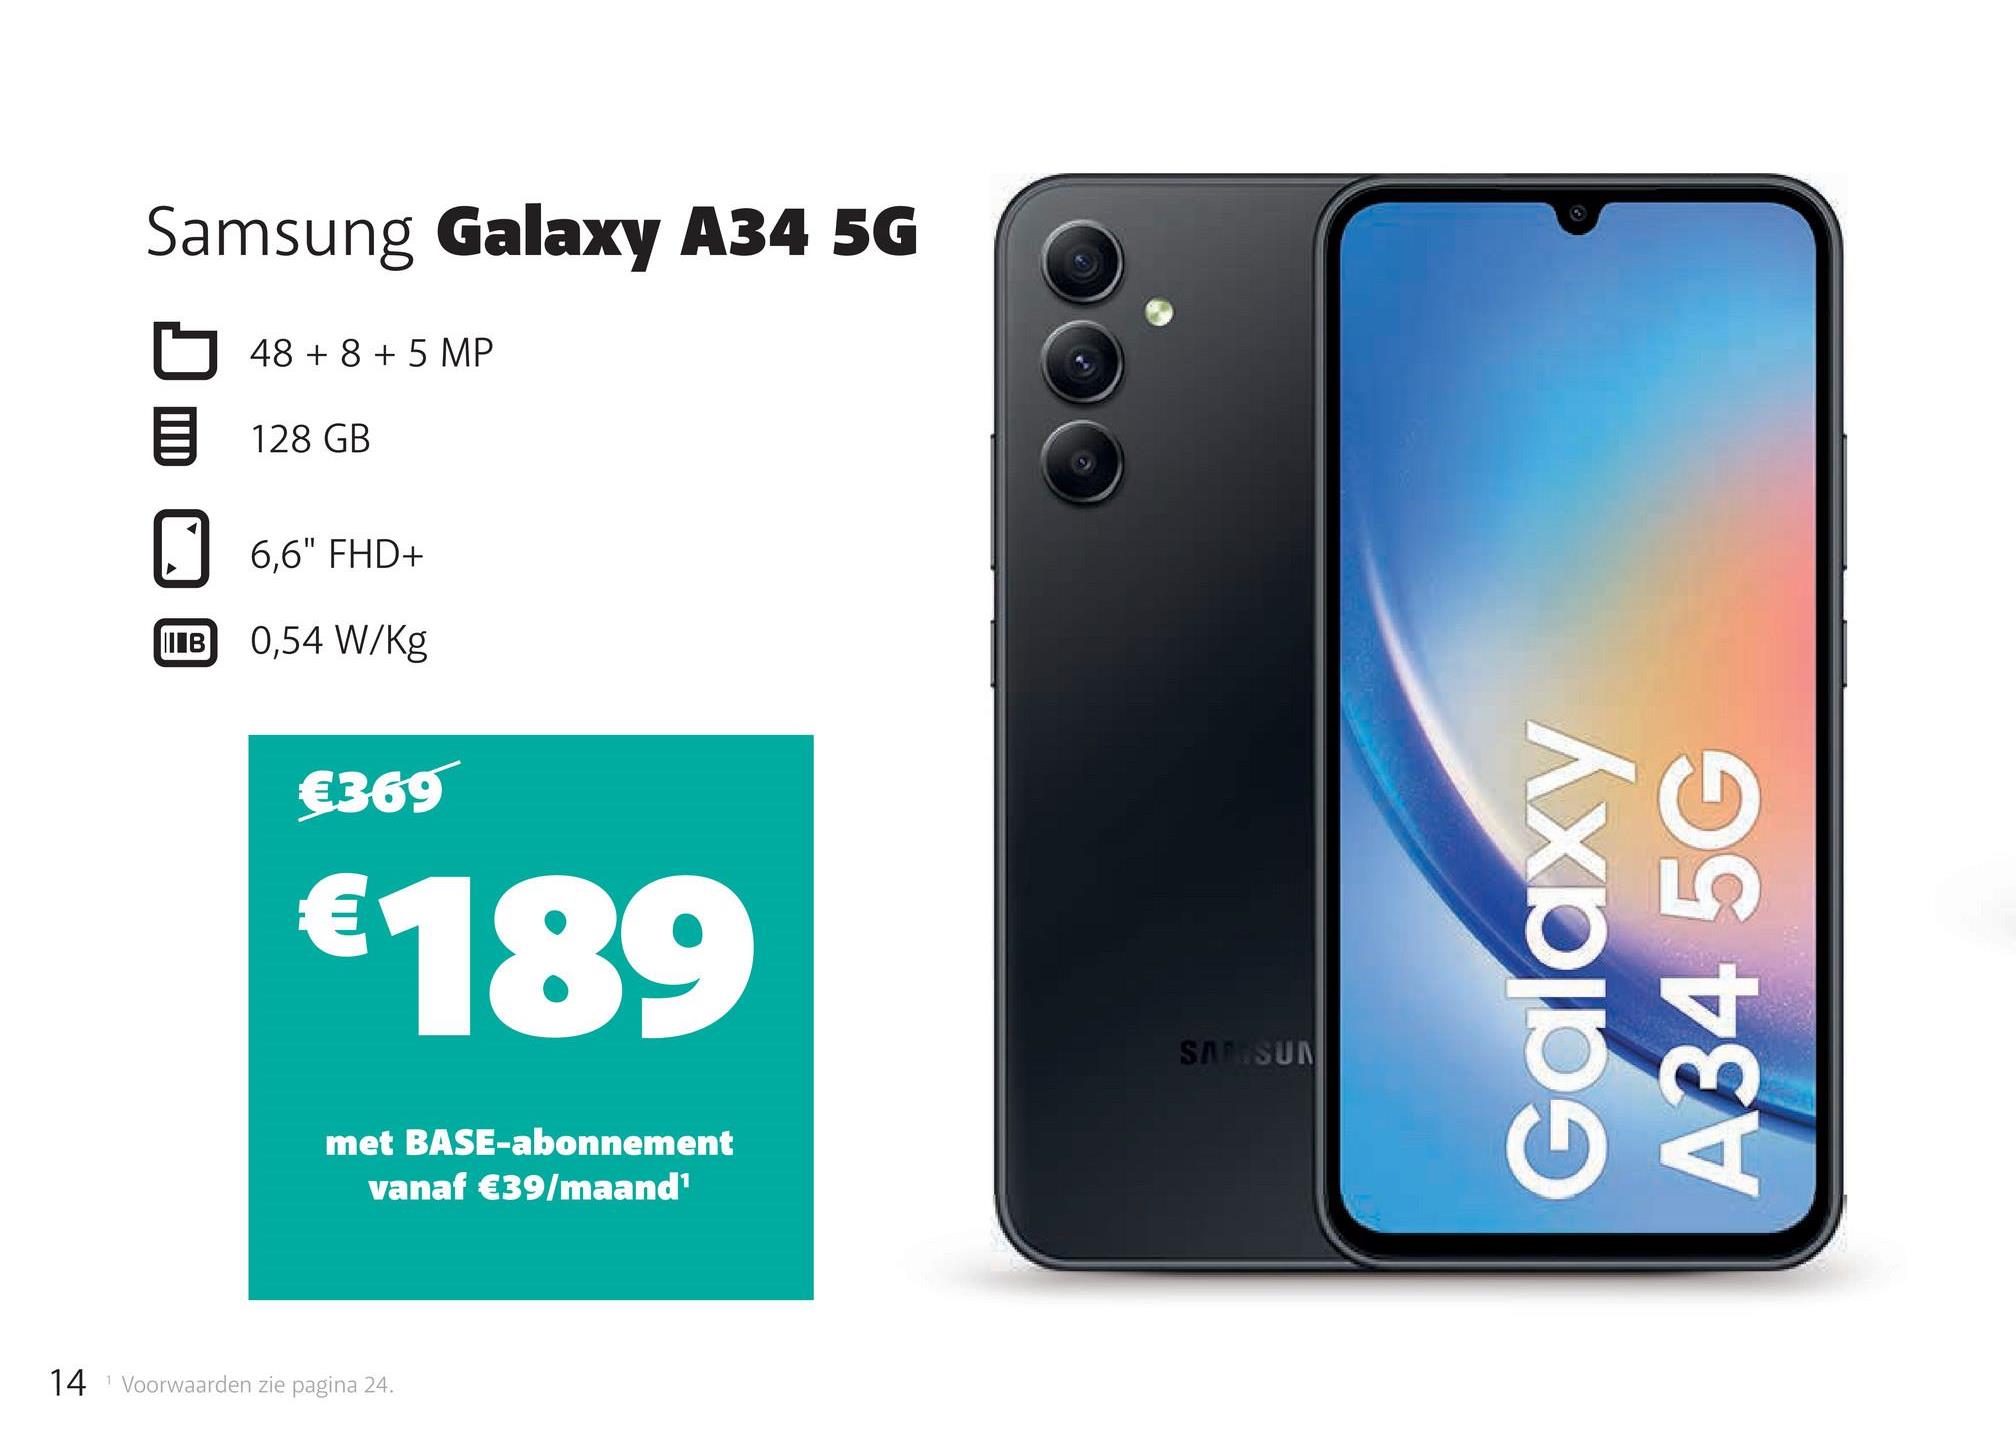 Samsung Galaxy A34 5G
1
48 + 8 + 5 MP
128 GB
6,6" FHD+
IB 0,54 W/Kg
€369
€189
met BASE-abonnement
vanaf €39/maand¹
14 Voorwaarden zie pagina 24.
T
SAMSUN
Galaxy
A34 5G